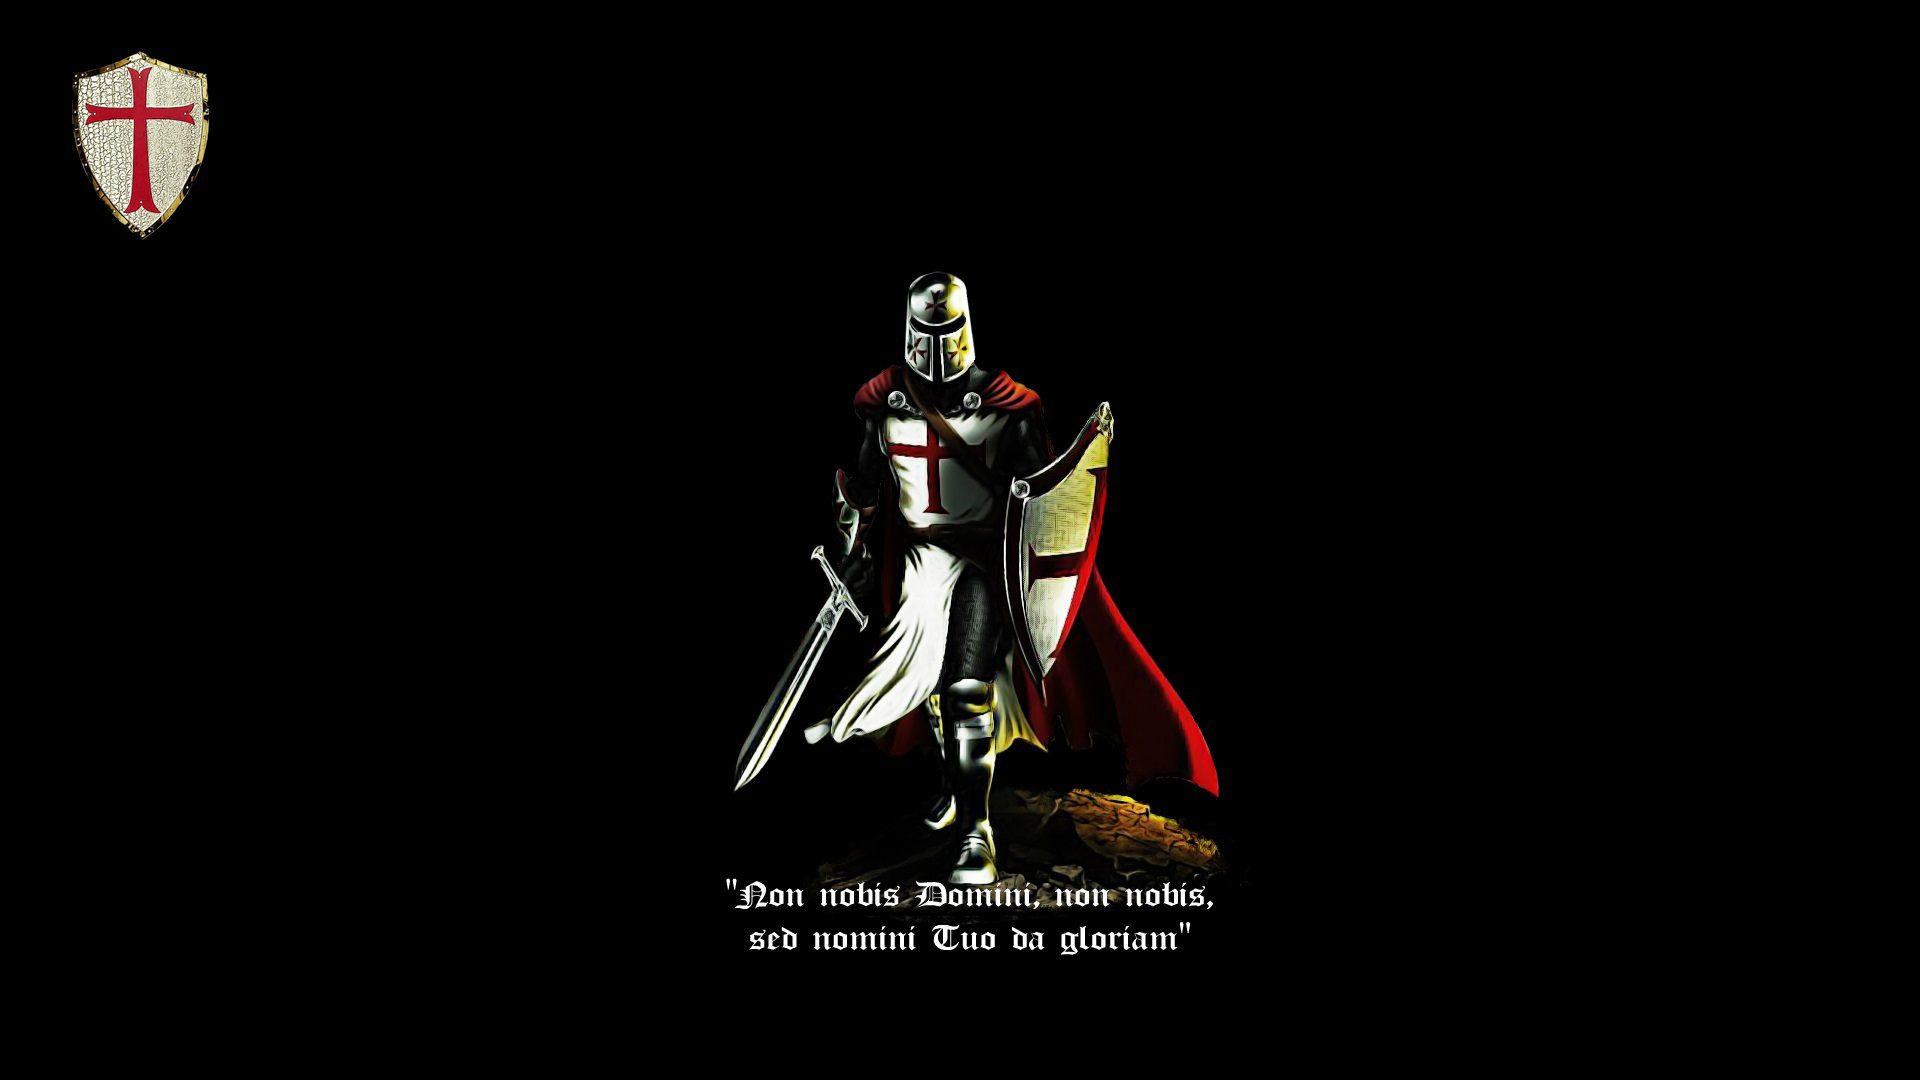 Knight Cross Templar Latin Crusader Cattolic Black Red